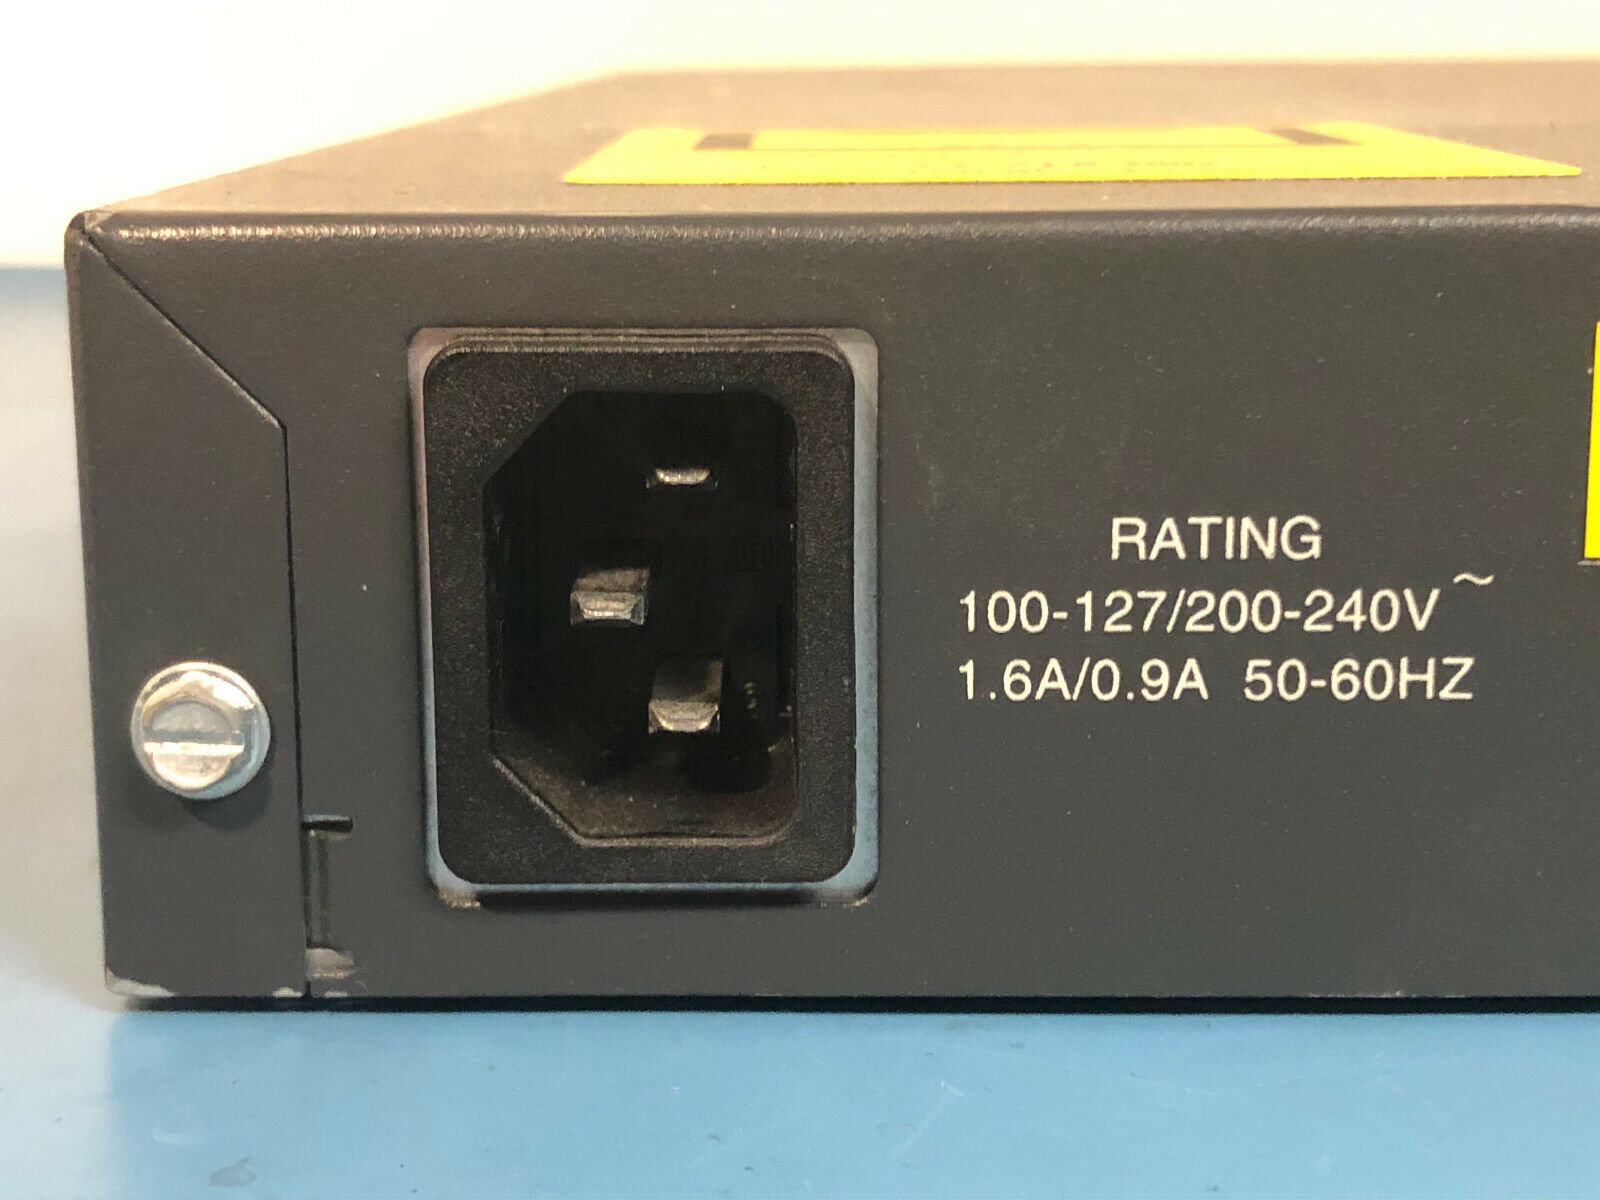 Cisco Catalyst 3548 WS-C3548-XL-EN Ethernet Switch 48x 10/100 RJ45 2x 1Gb GBIC.